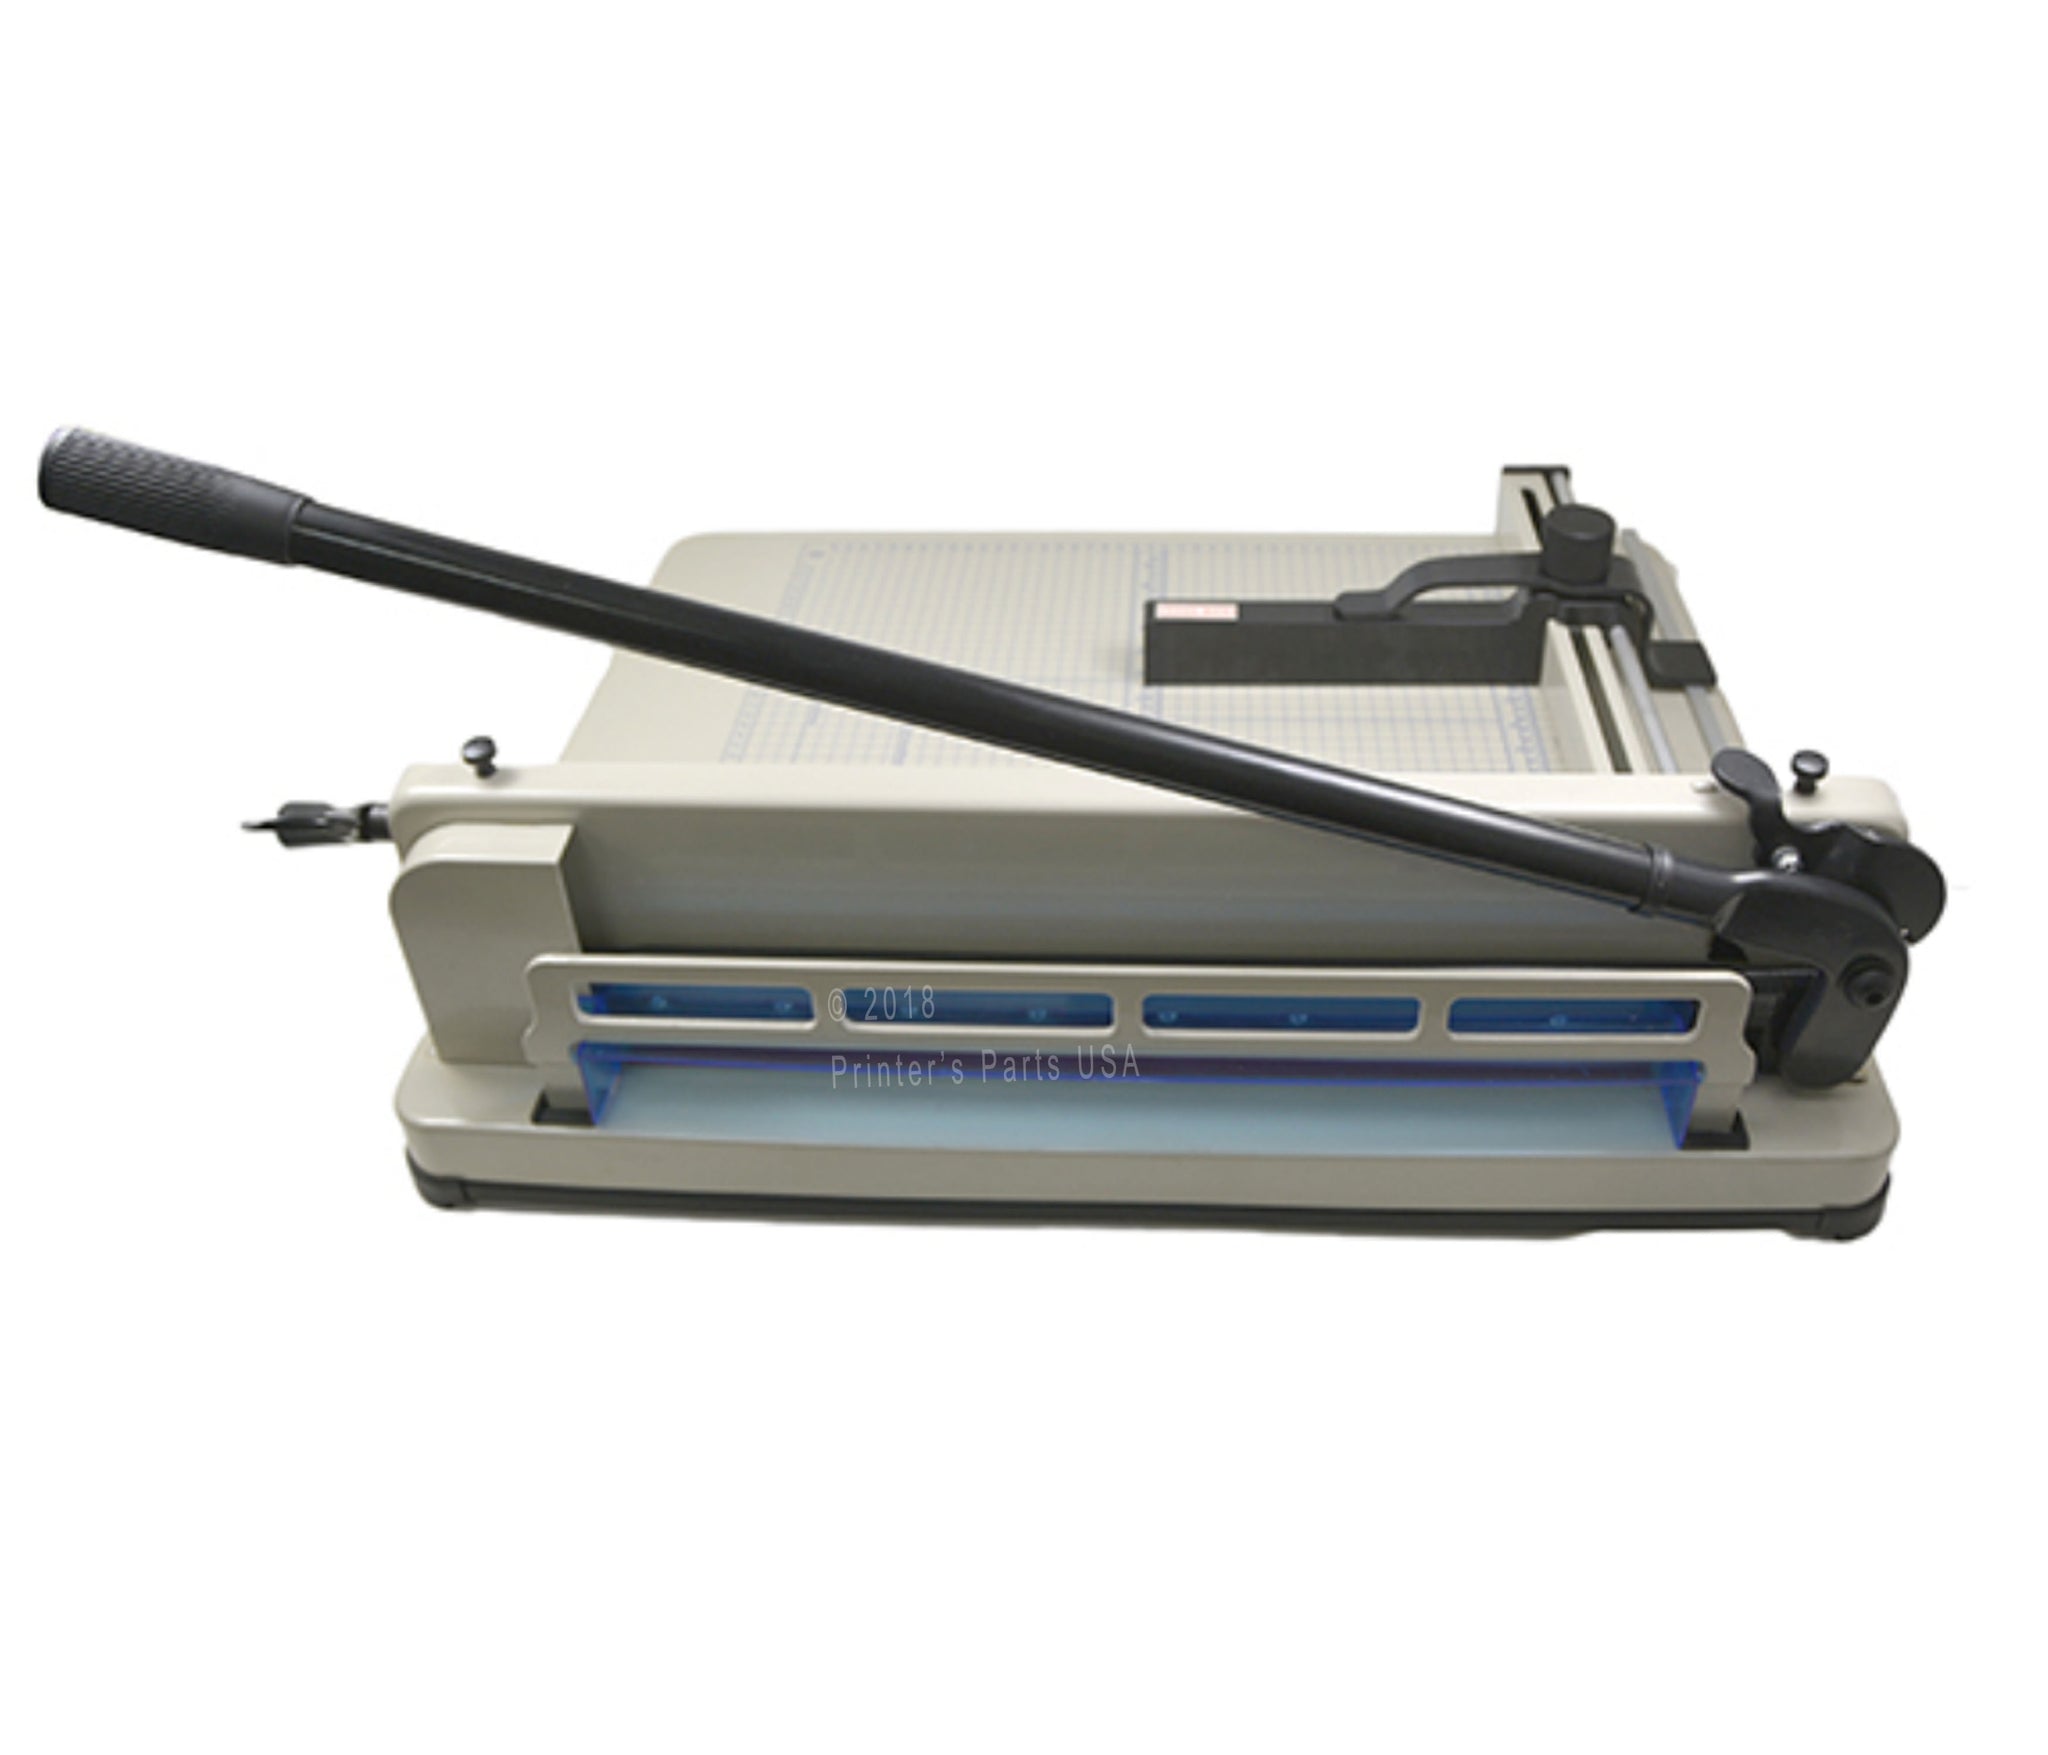 MANUAL PAPER CUTTER 17″ MODEL 858-A3 Guillotine Paper Cutter